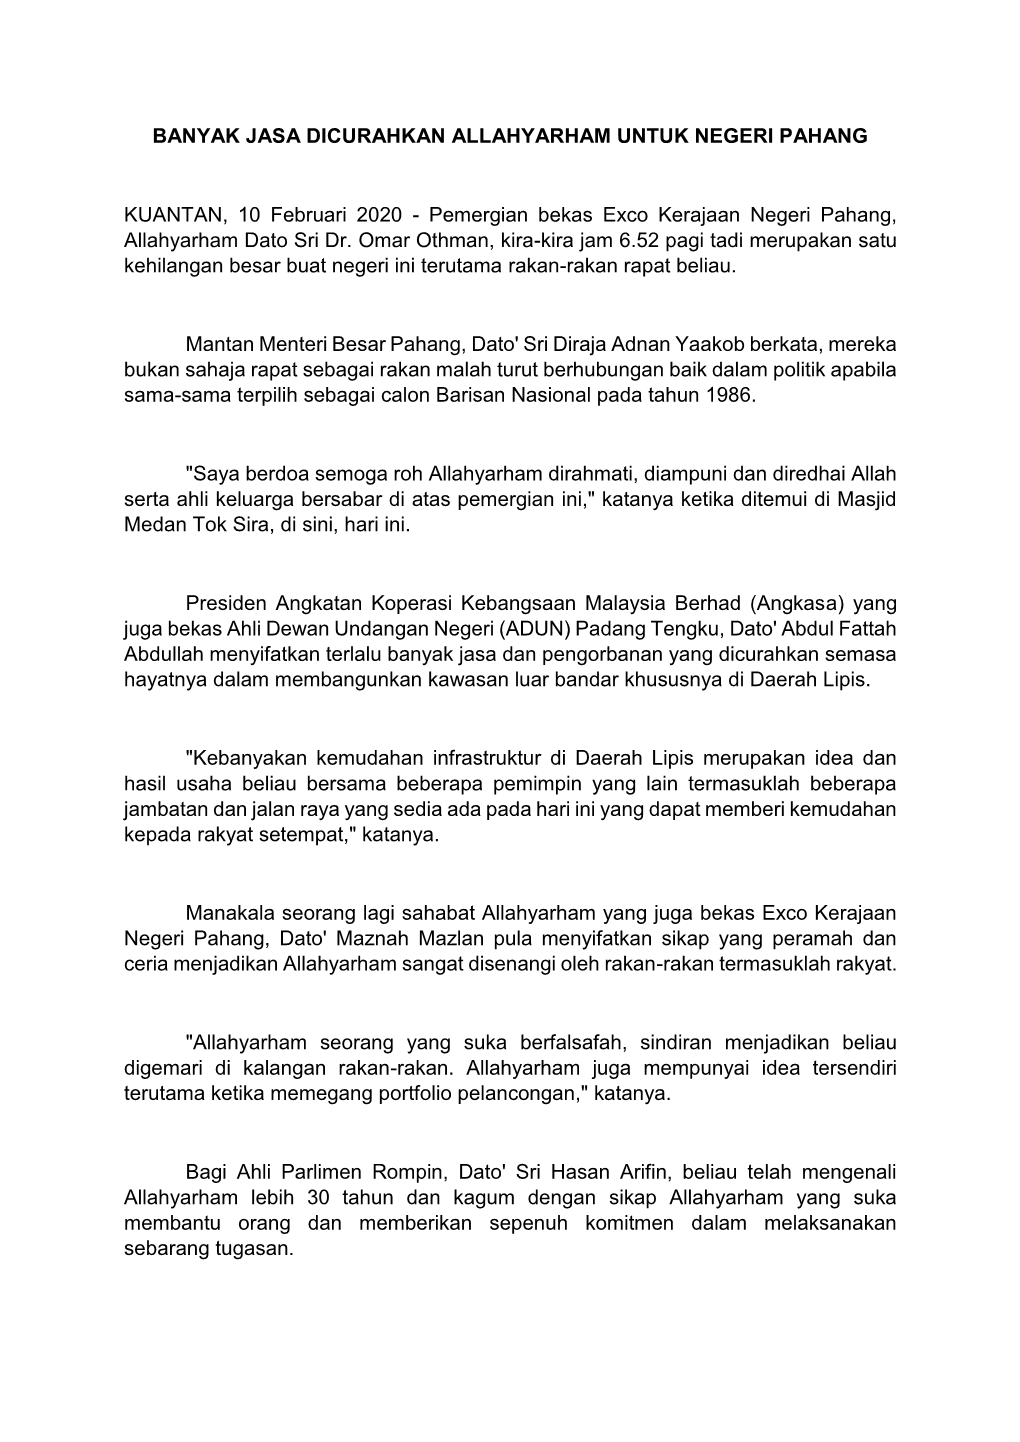 Pemergian Bekas Exco Kerajaan Negeri Pahang, Allahyarham Dato Sri Dr